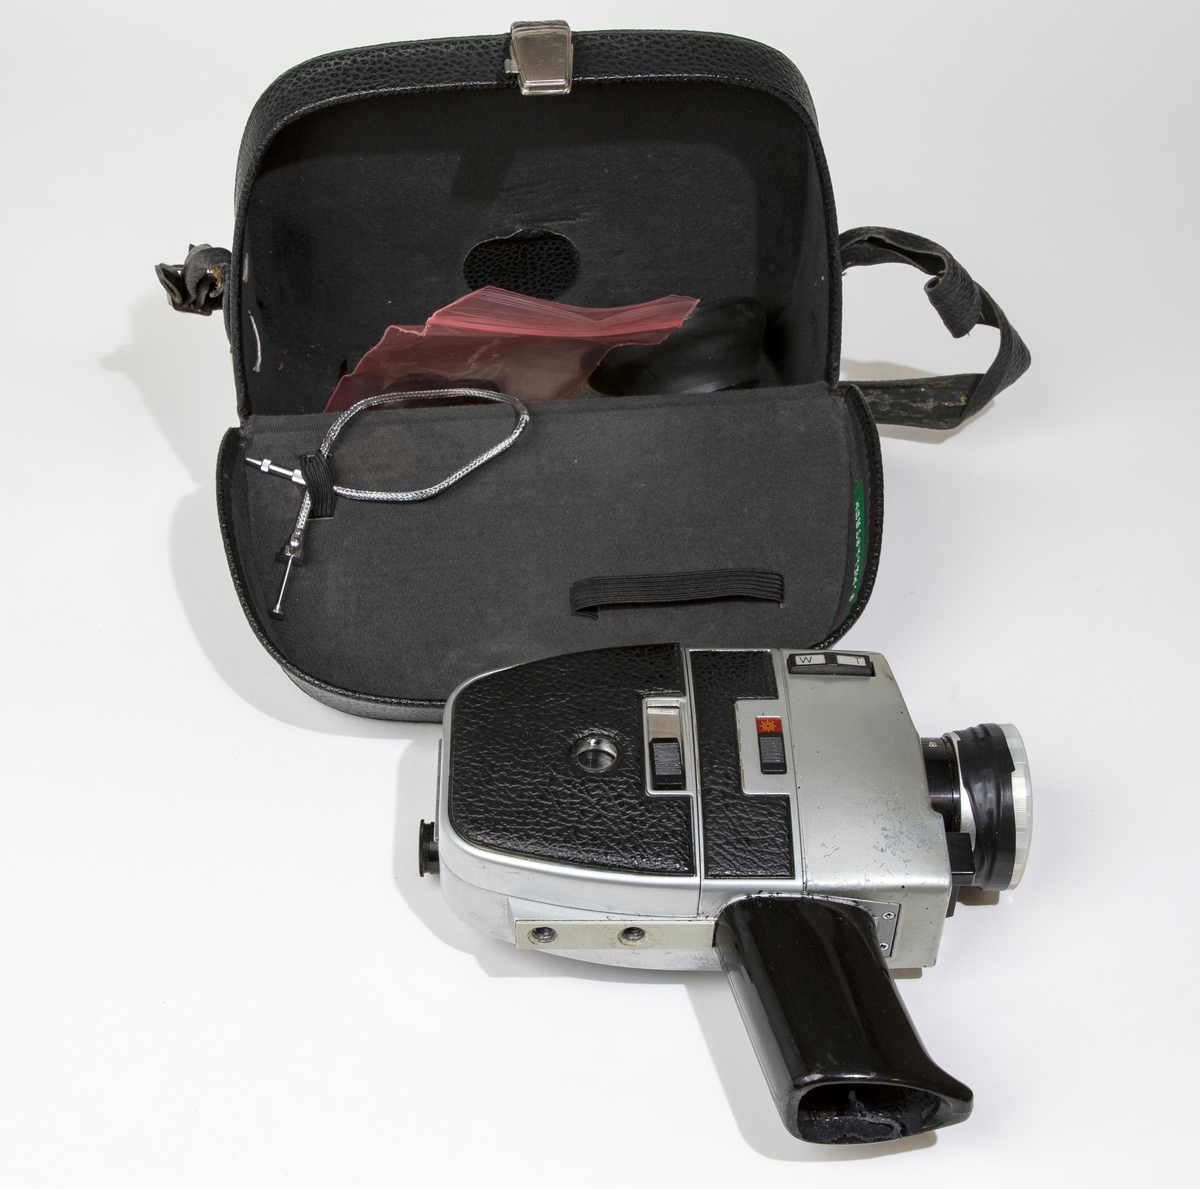 Filmkamera, super-8 BAUER C ROYAL 6-zoom med kamerahus av grå metall delvist klädd med svart skinnimitation. Handtaget är av svart plast och har utrymme för batterier och tillsluts av en lös platta. På linsen sitter ett genomskinligt linsskydd. Filmkameran är placerad i en svart väska, JM 56586, i vilken finns en fjärrutlösare, ljusskydd av gummi för linsen, liten gummiring för sökaren, och större gummiring.